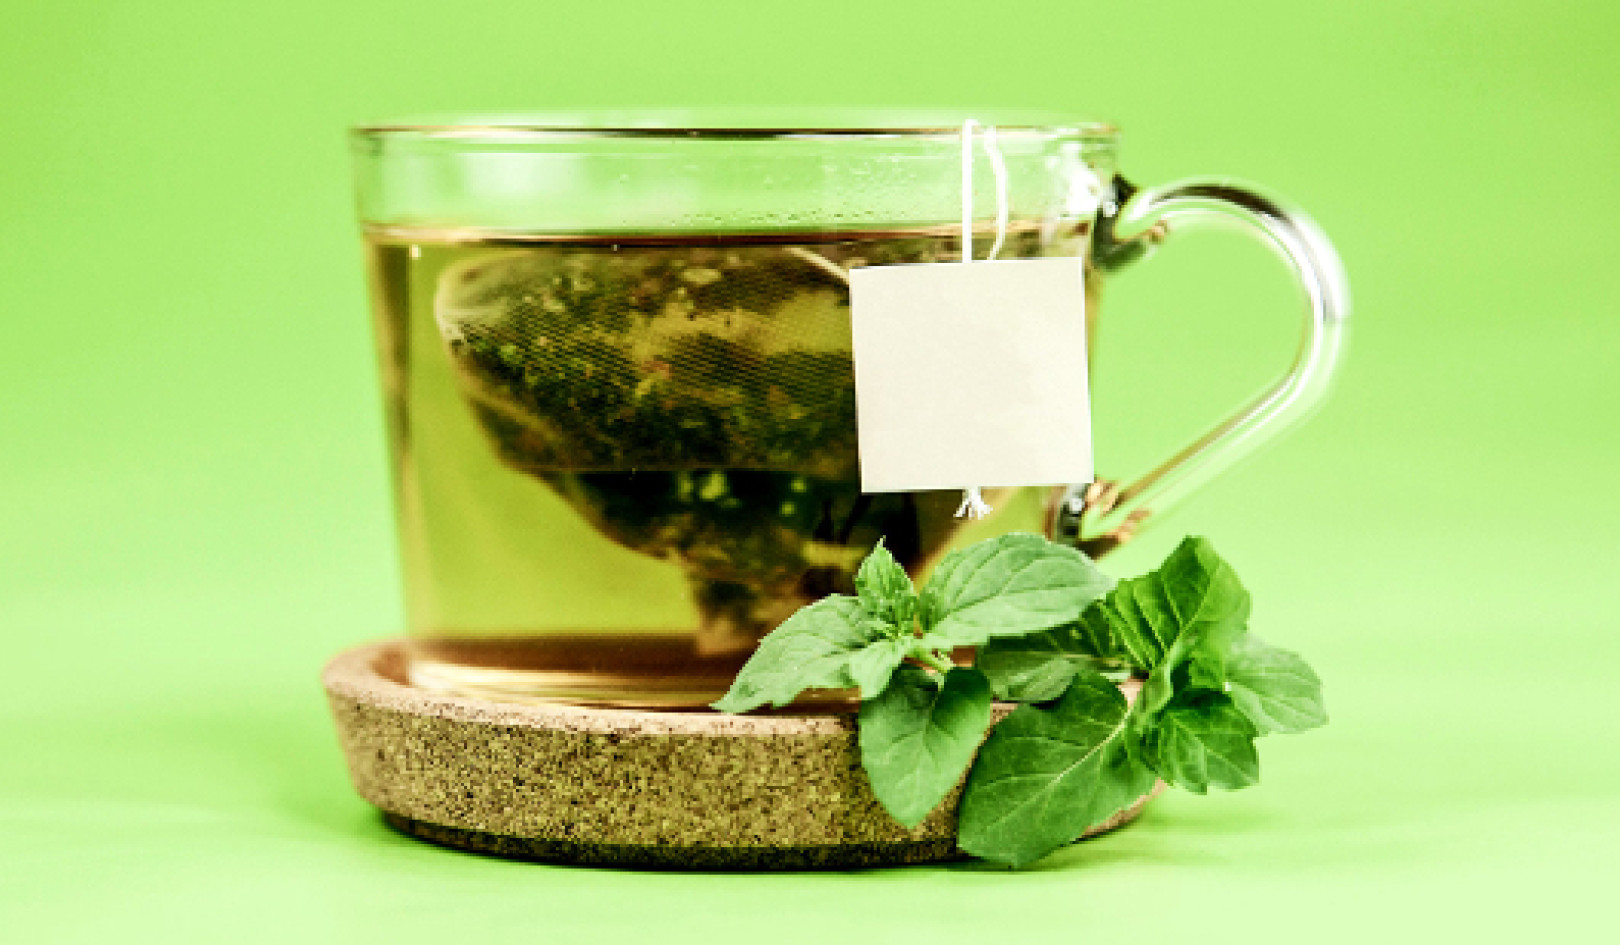 Związki w winie i zielonej herbacie mogą spowolnić chorobę Alzheimera?